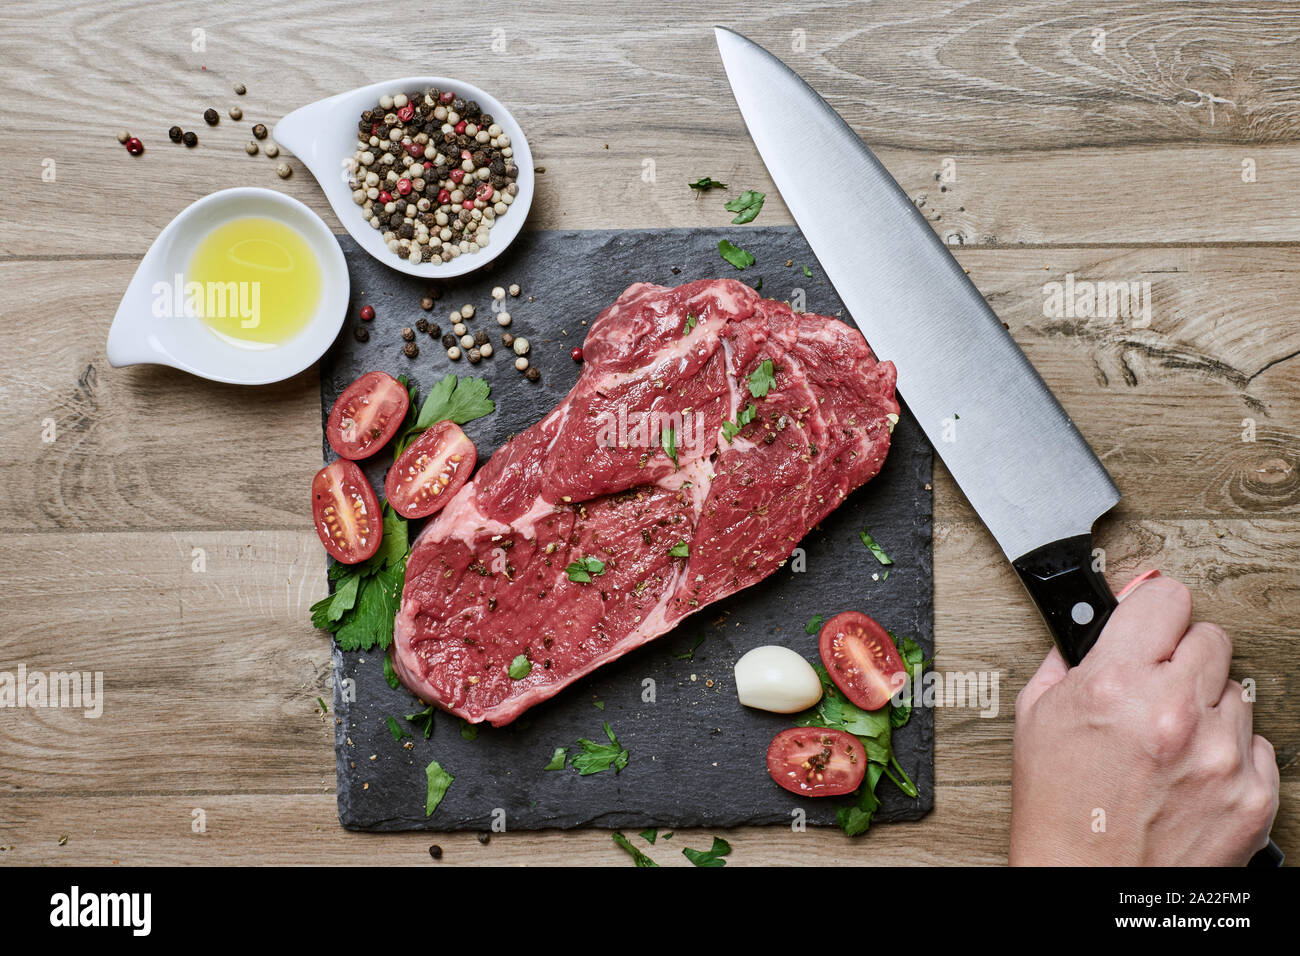 Weibliche Hand bereitet Essen, ein rohes Rib-Eye Steak mit frischen Gewürzen auf einem Schiefertafel und Holztisch. Stockfoto